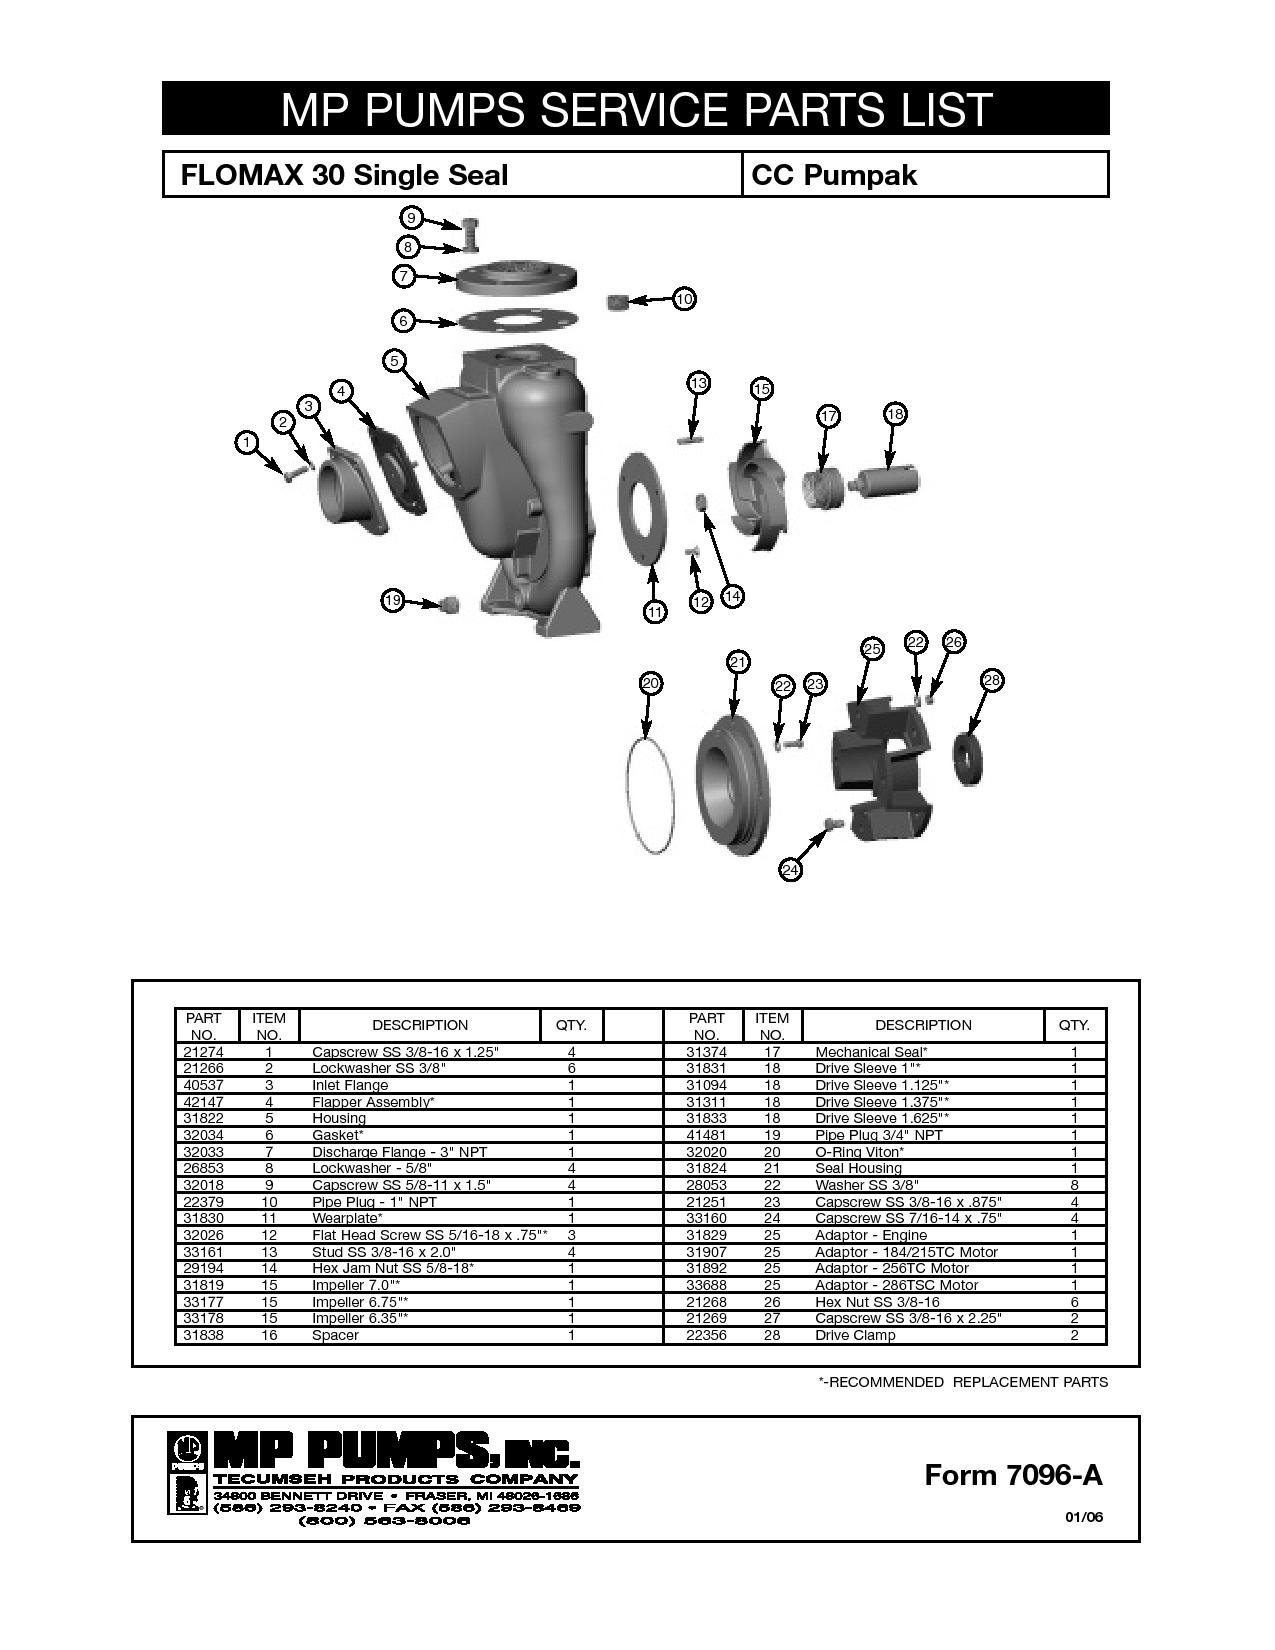 flomax-30-industrial-vacuum-pump_parts-list-7096-a